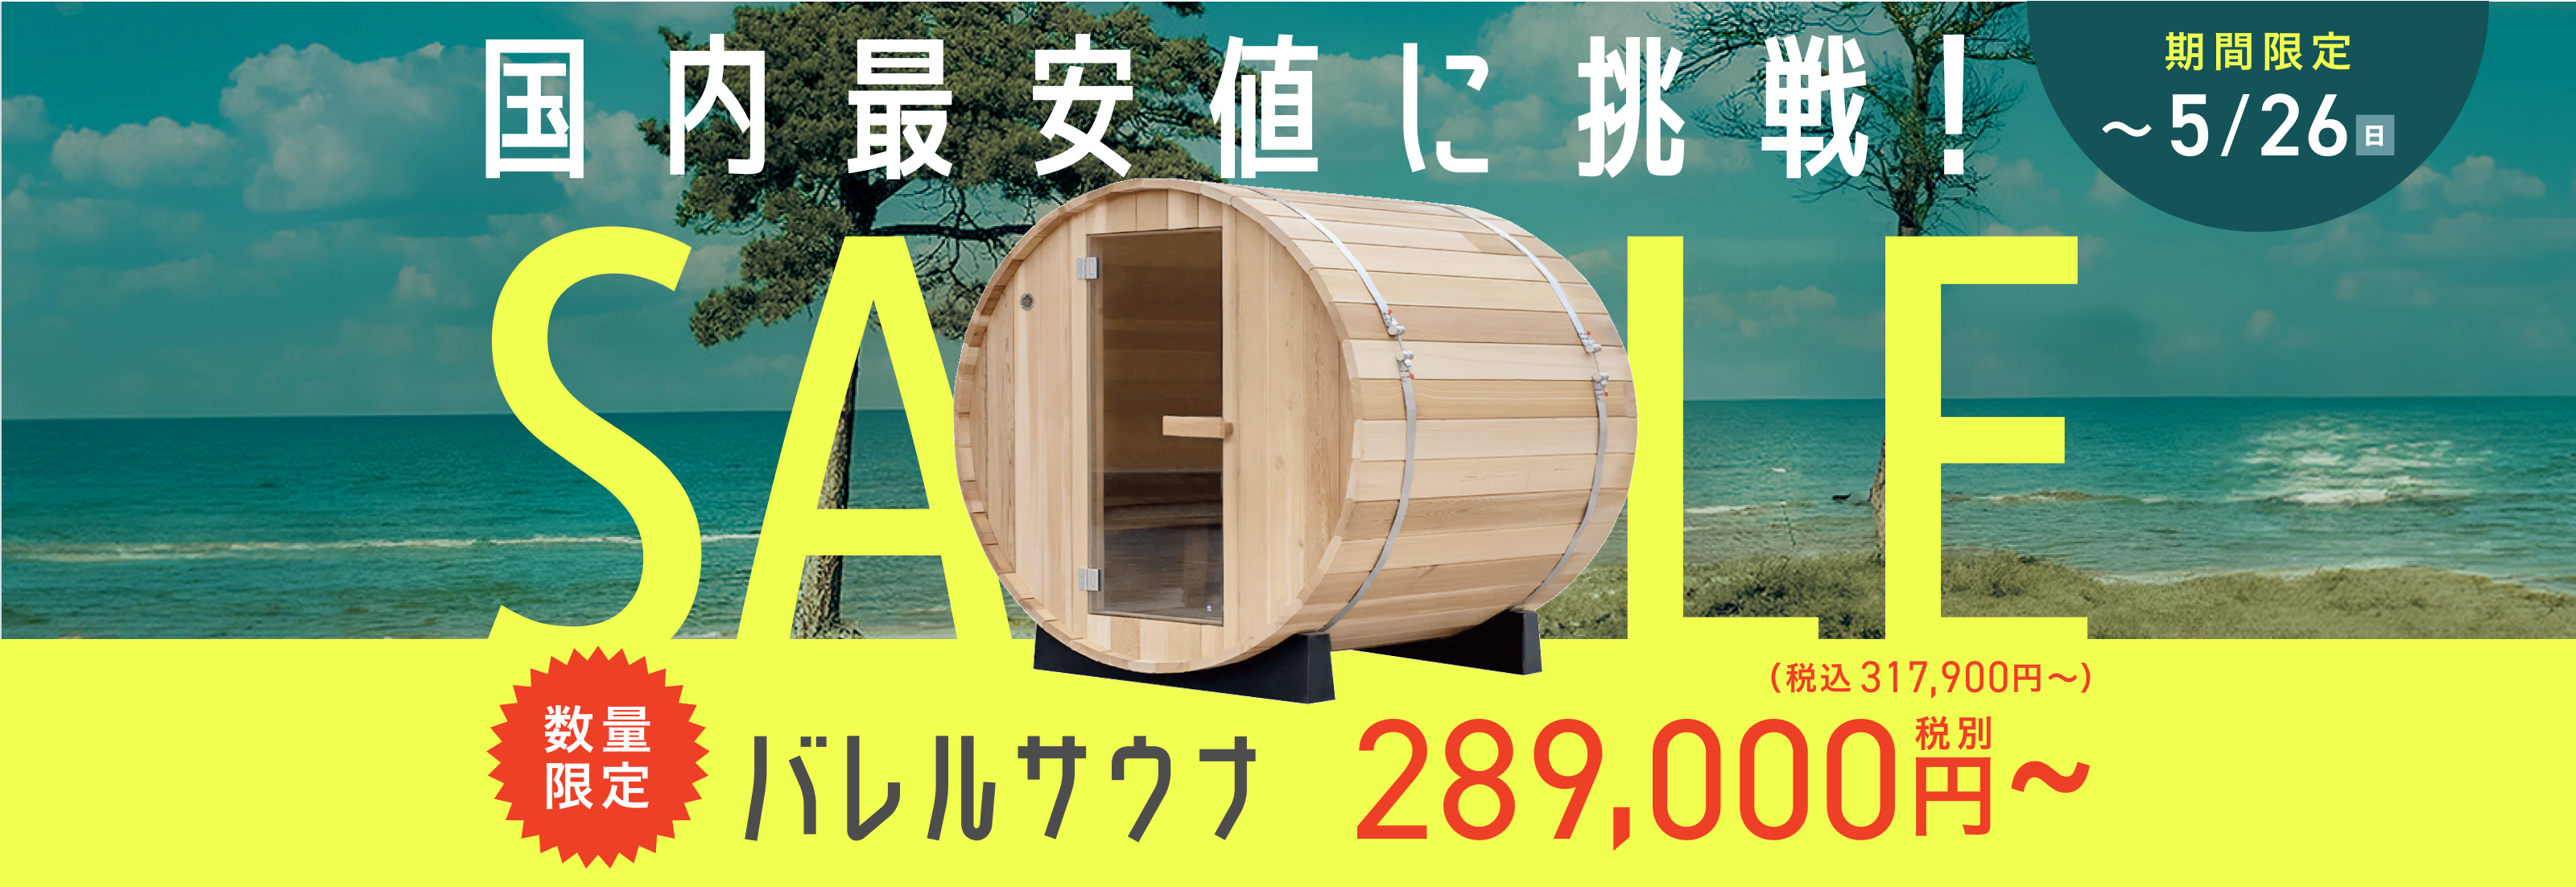 barrel sauna sale